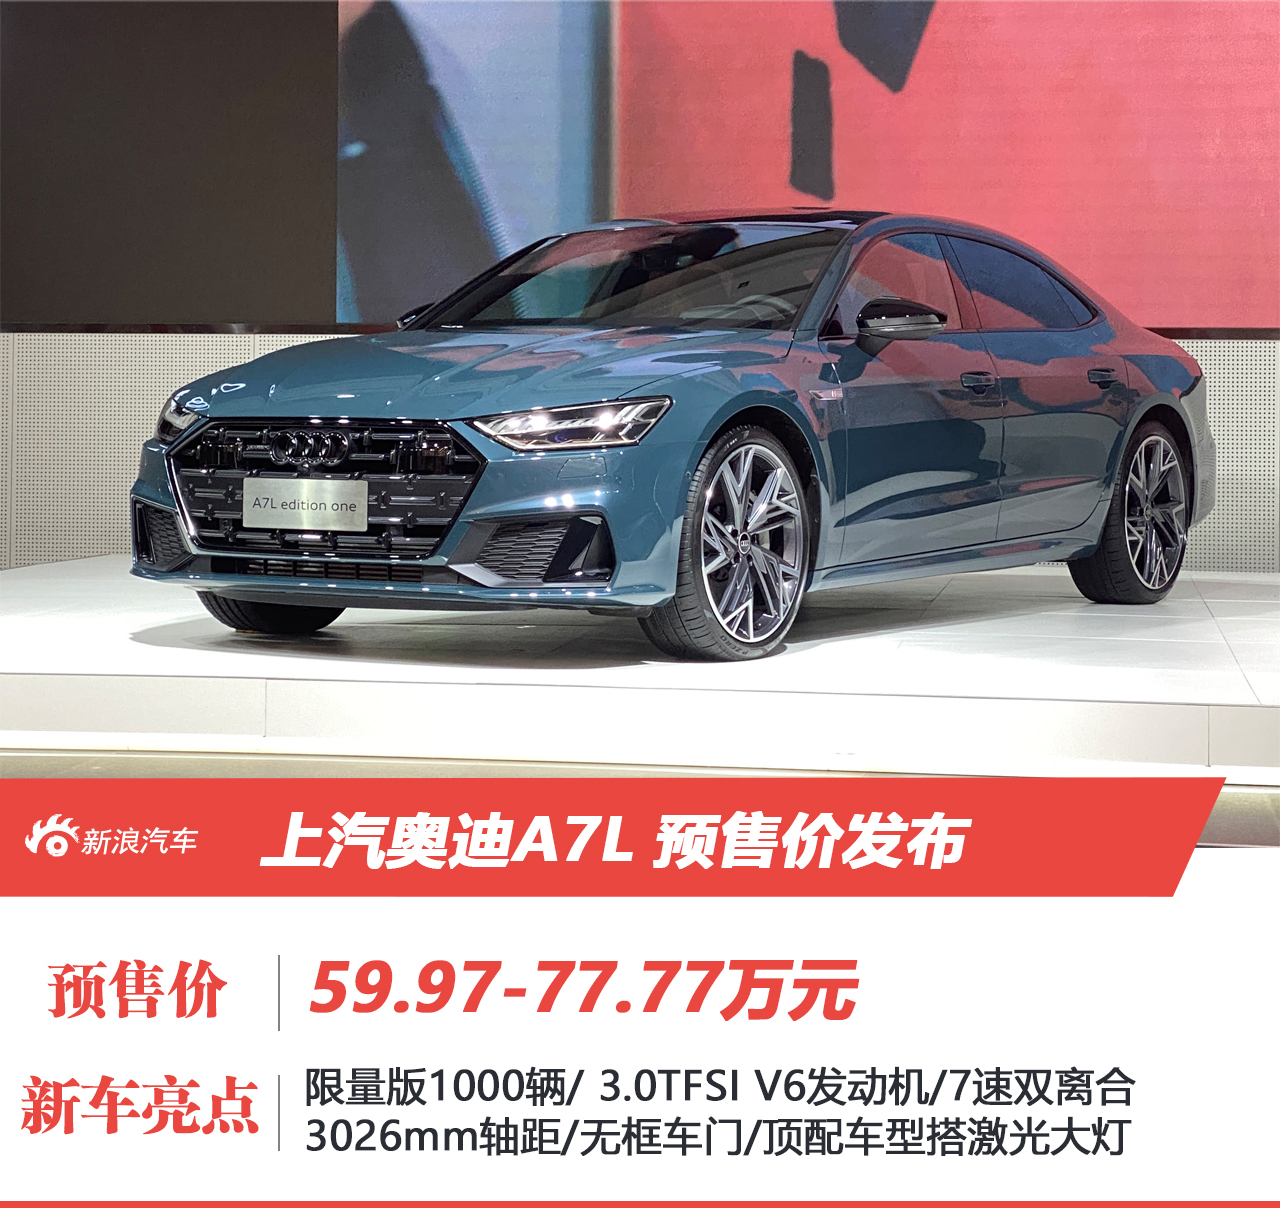 上汽奥迪A7L预售价59.97-77.77万元 正式投产